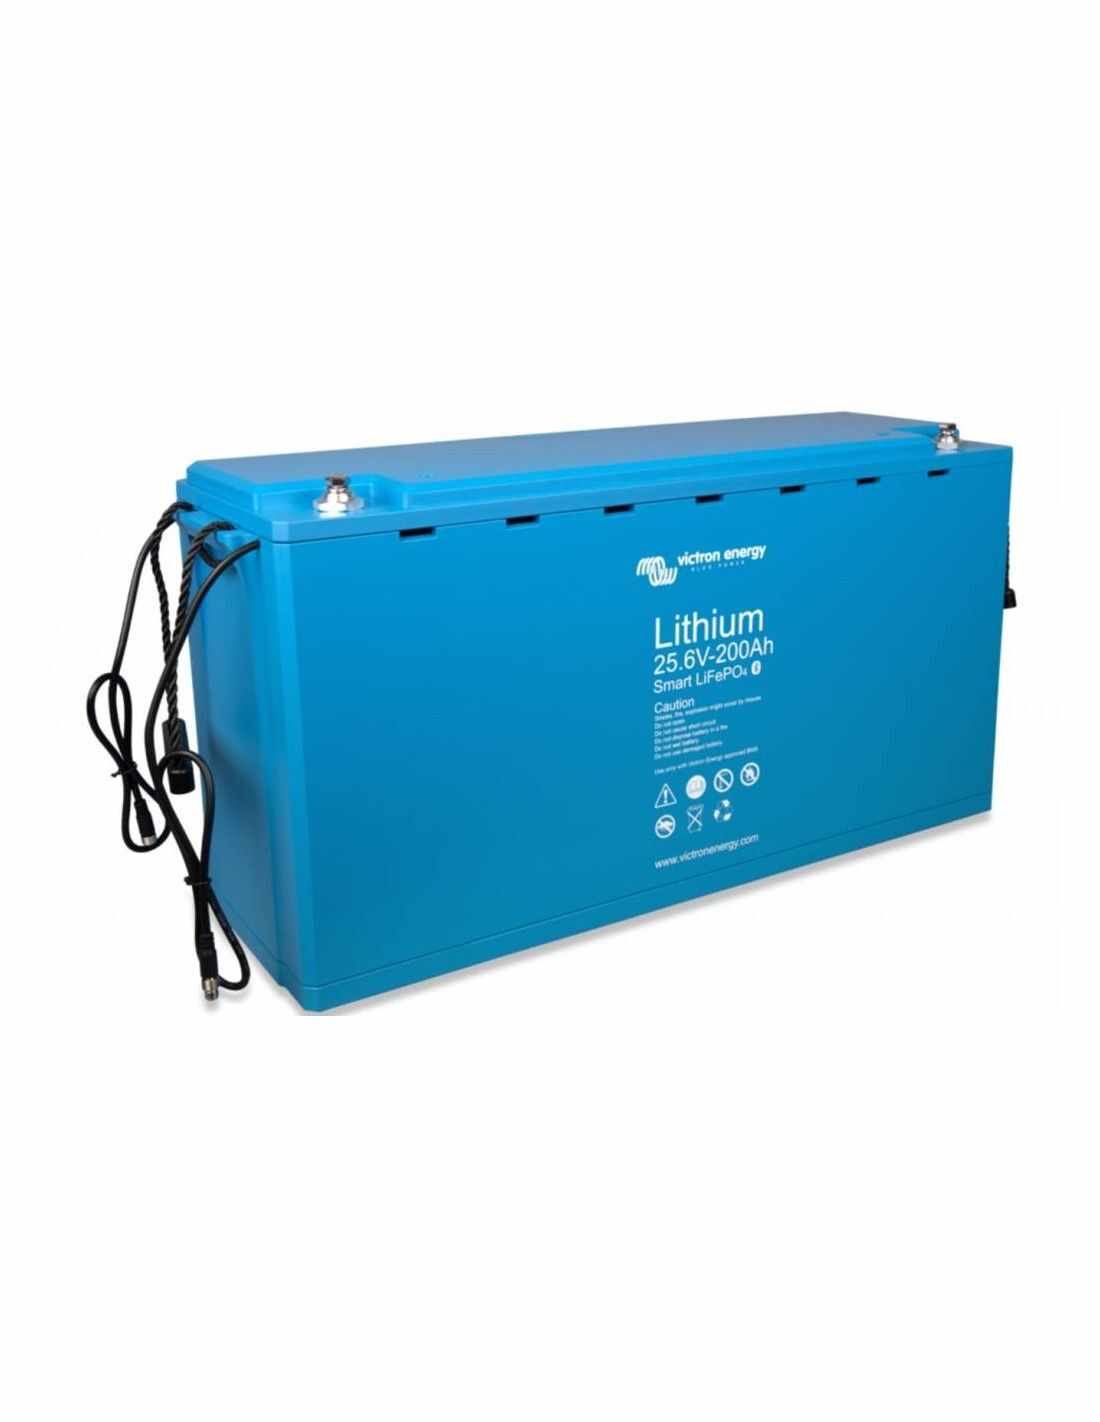 Baterie Smart LiFe PO4 25,6V/100Ah, Victron Energy BAT524110610